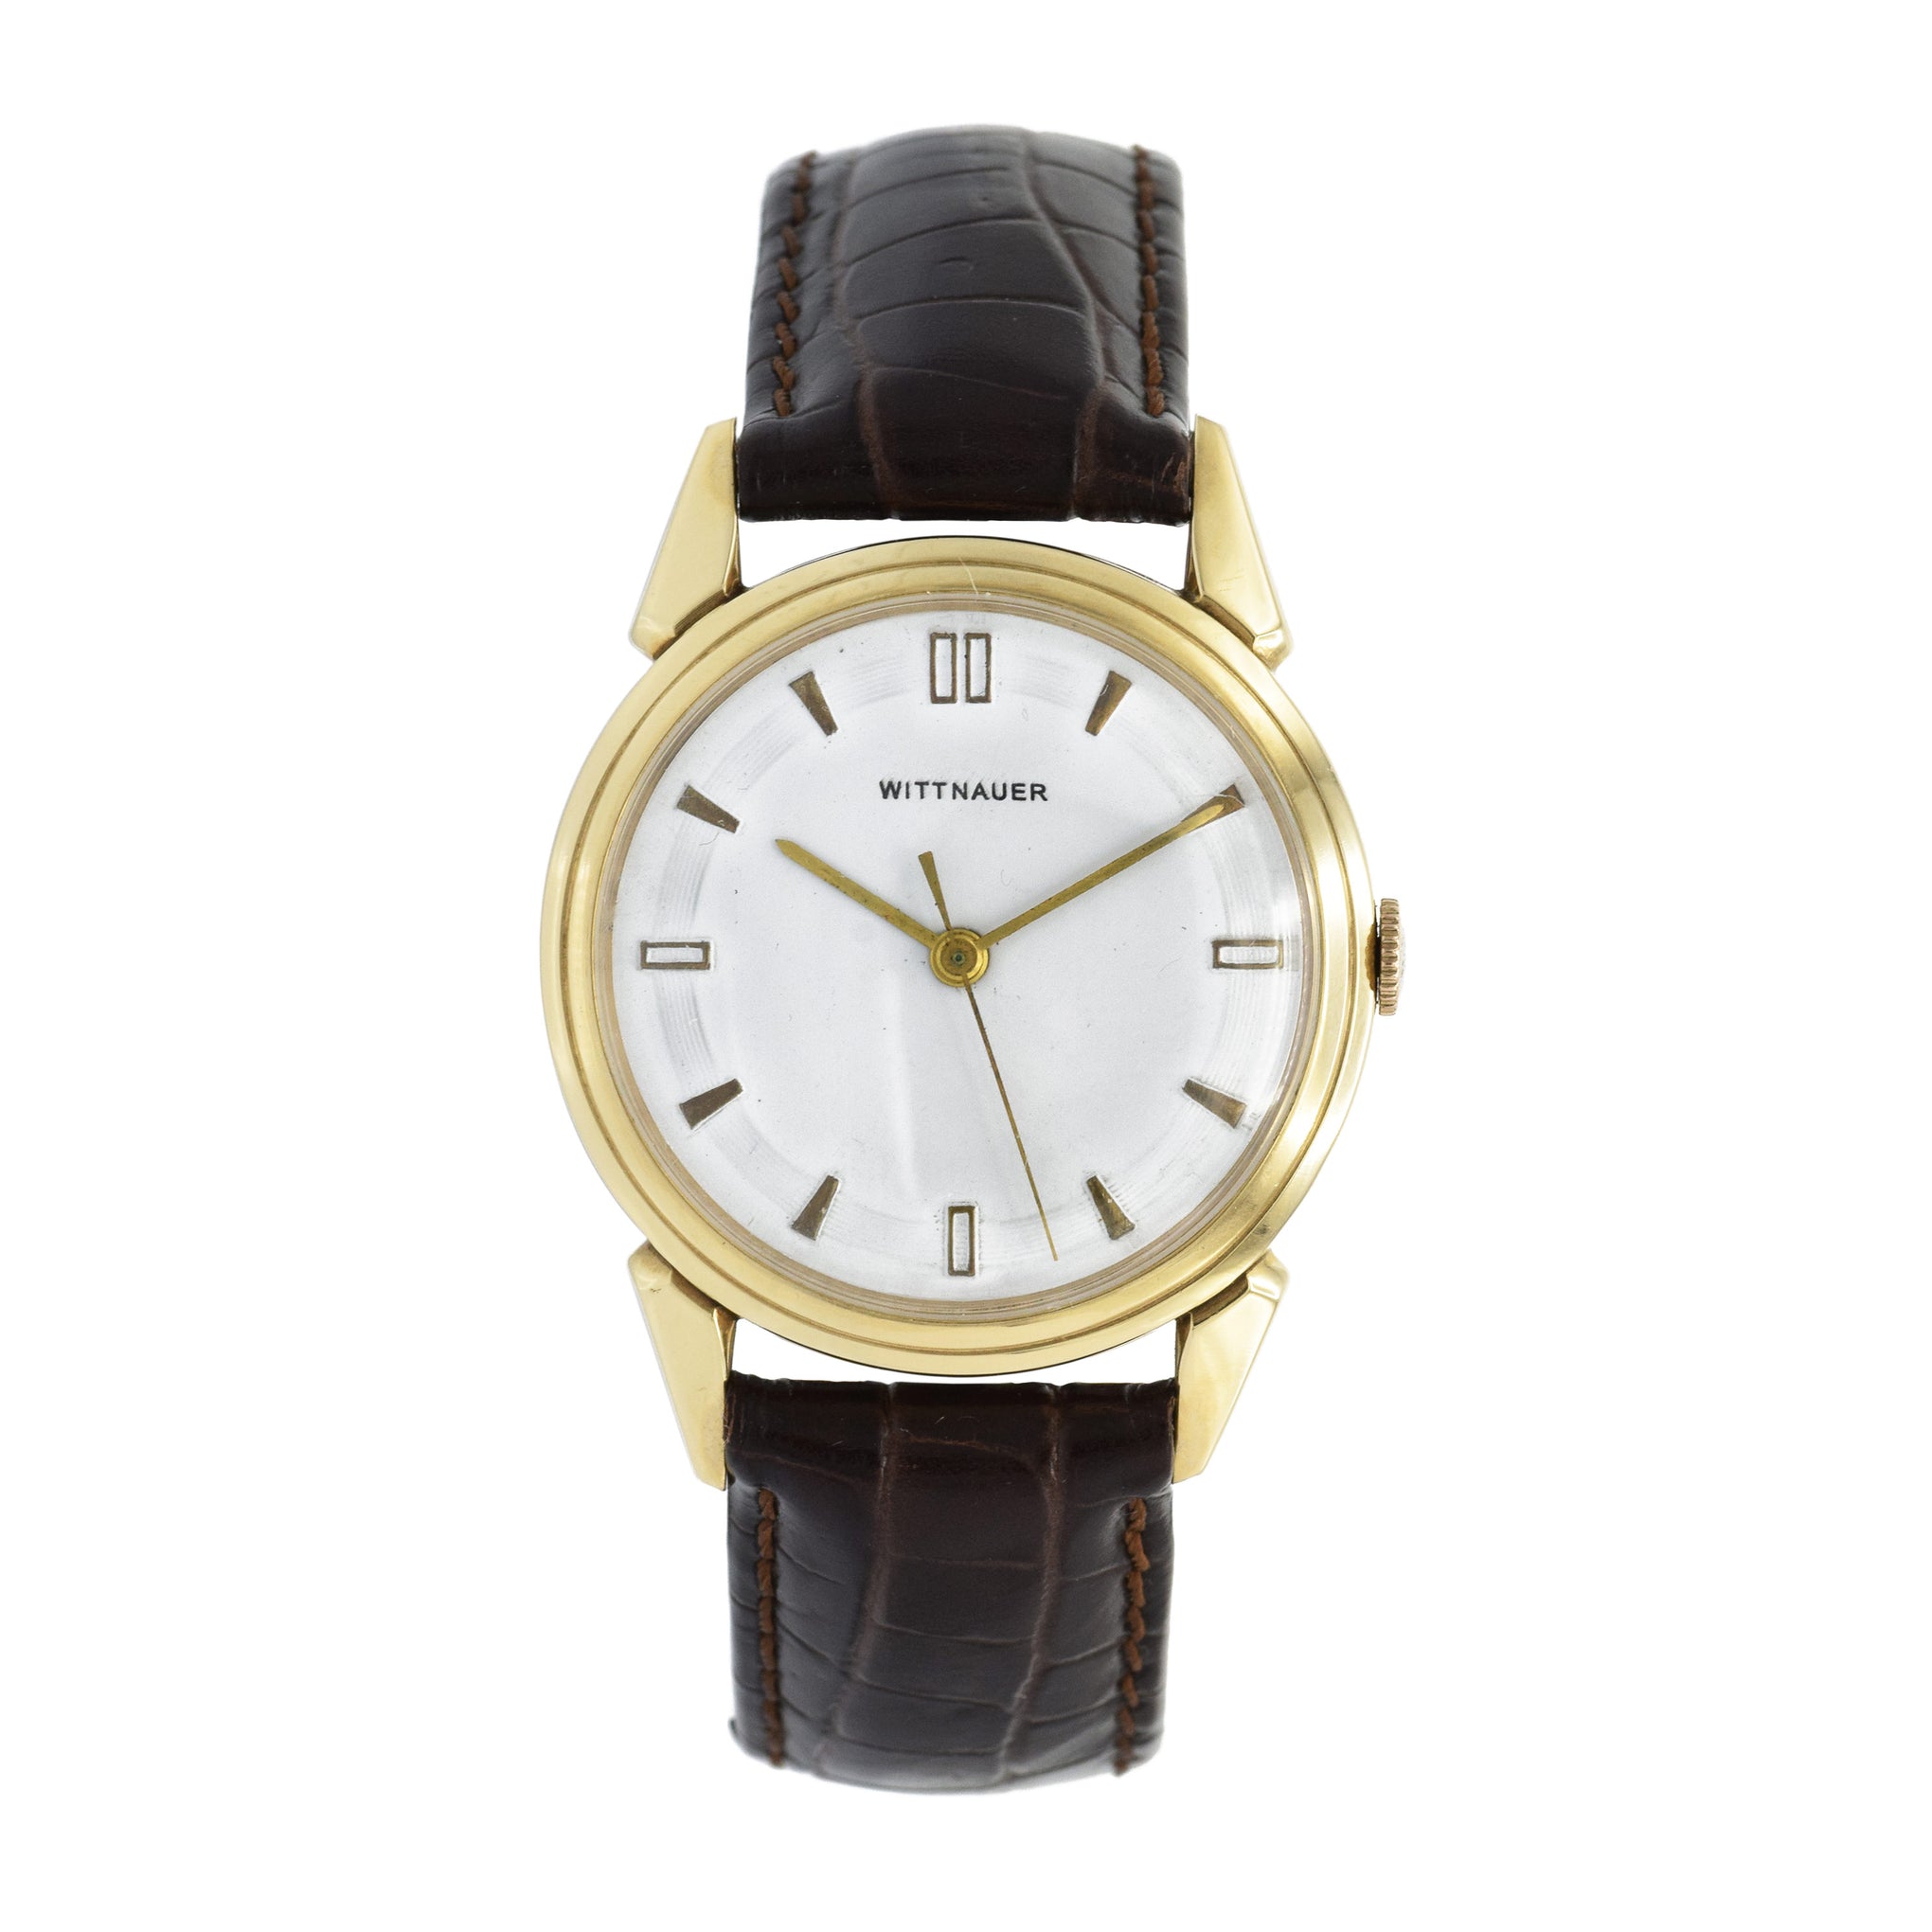 Vintage 1960s Wittnauer Watch